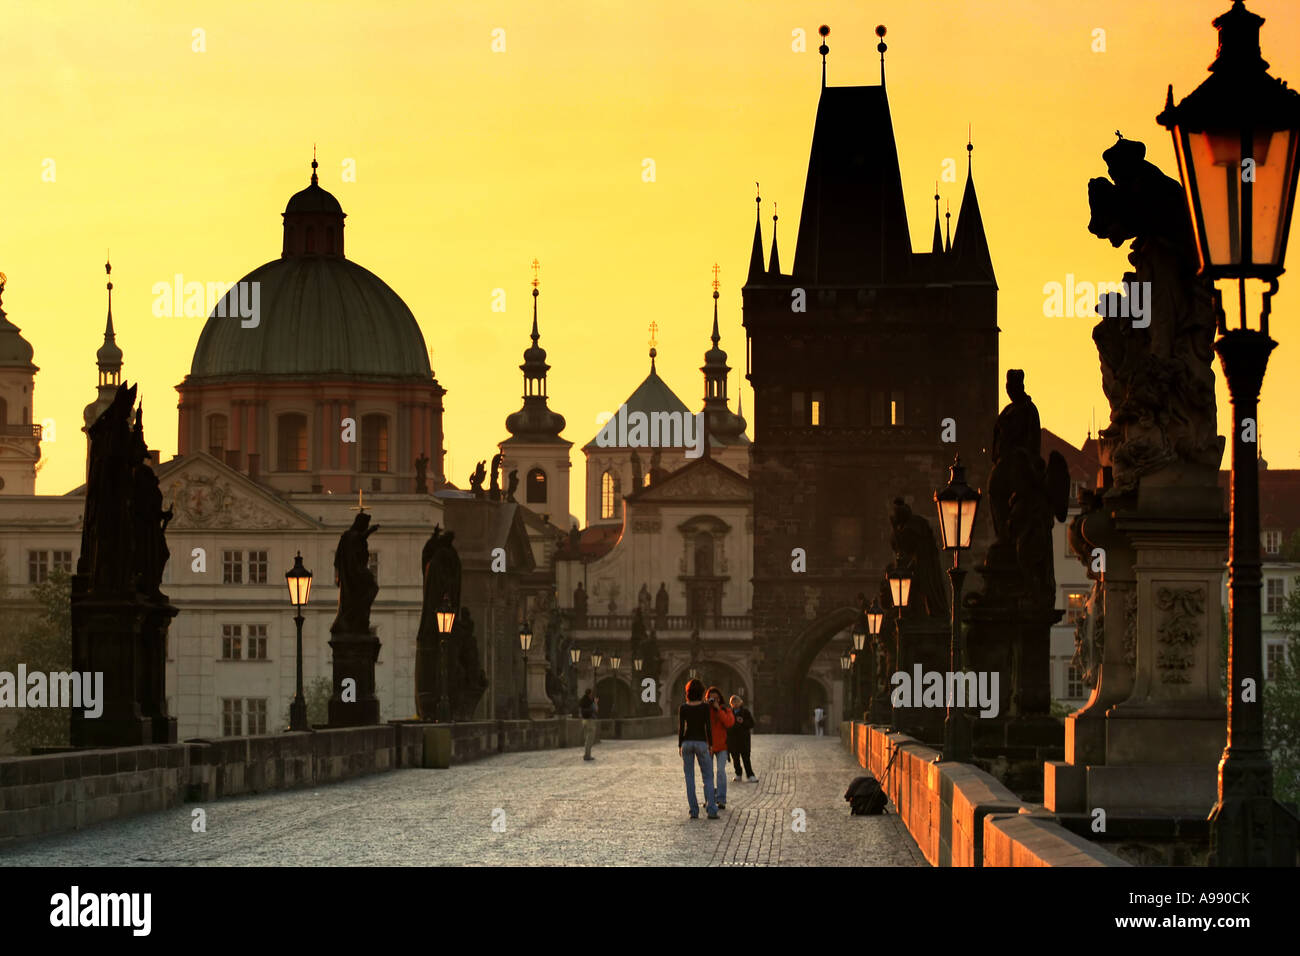 L'heure d'or baigne l'emblématique pont Charles de Prague dans une lueur chaleureuse, tandis que des statues aux silhouettes montent la garde sur la scène matinale sereine Banque D'Images